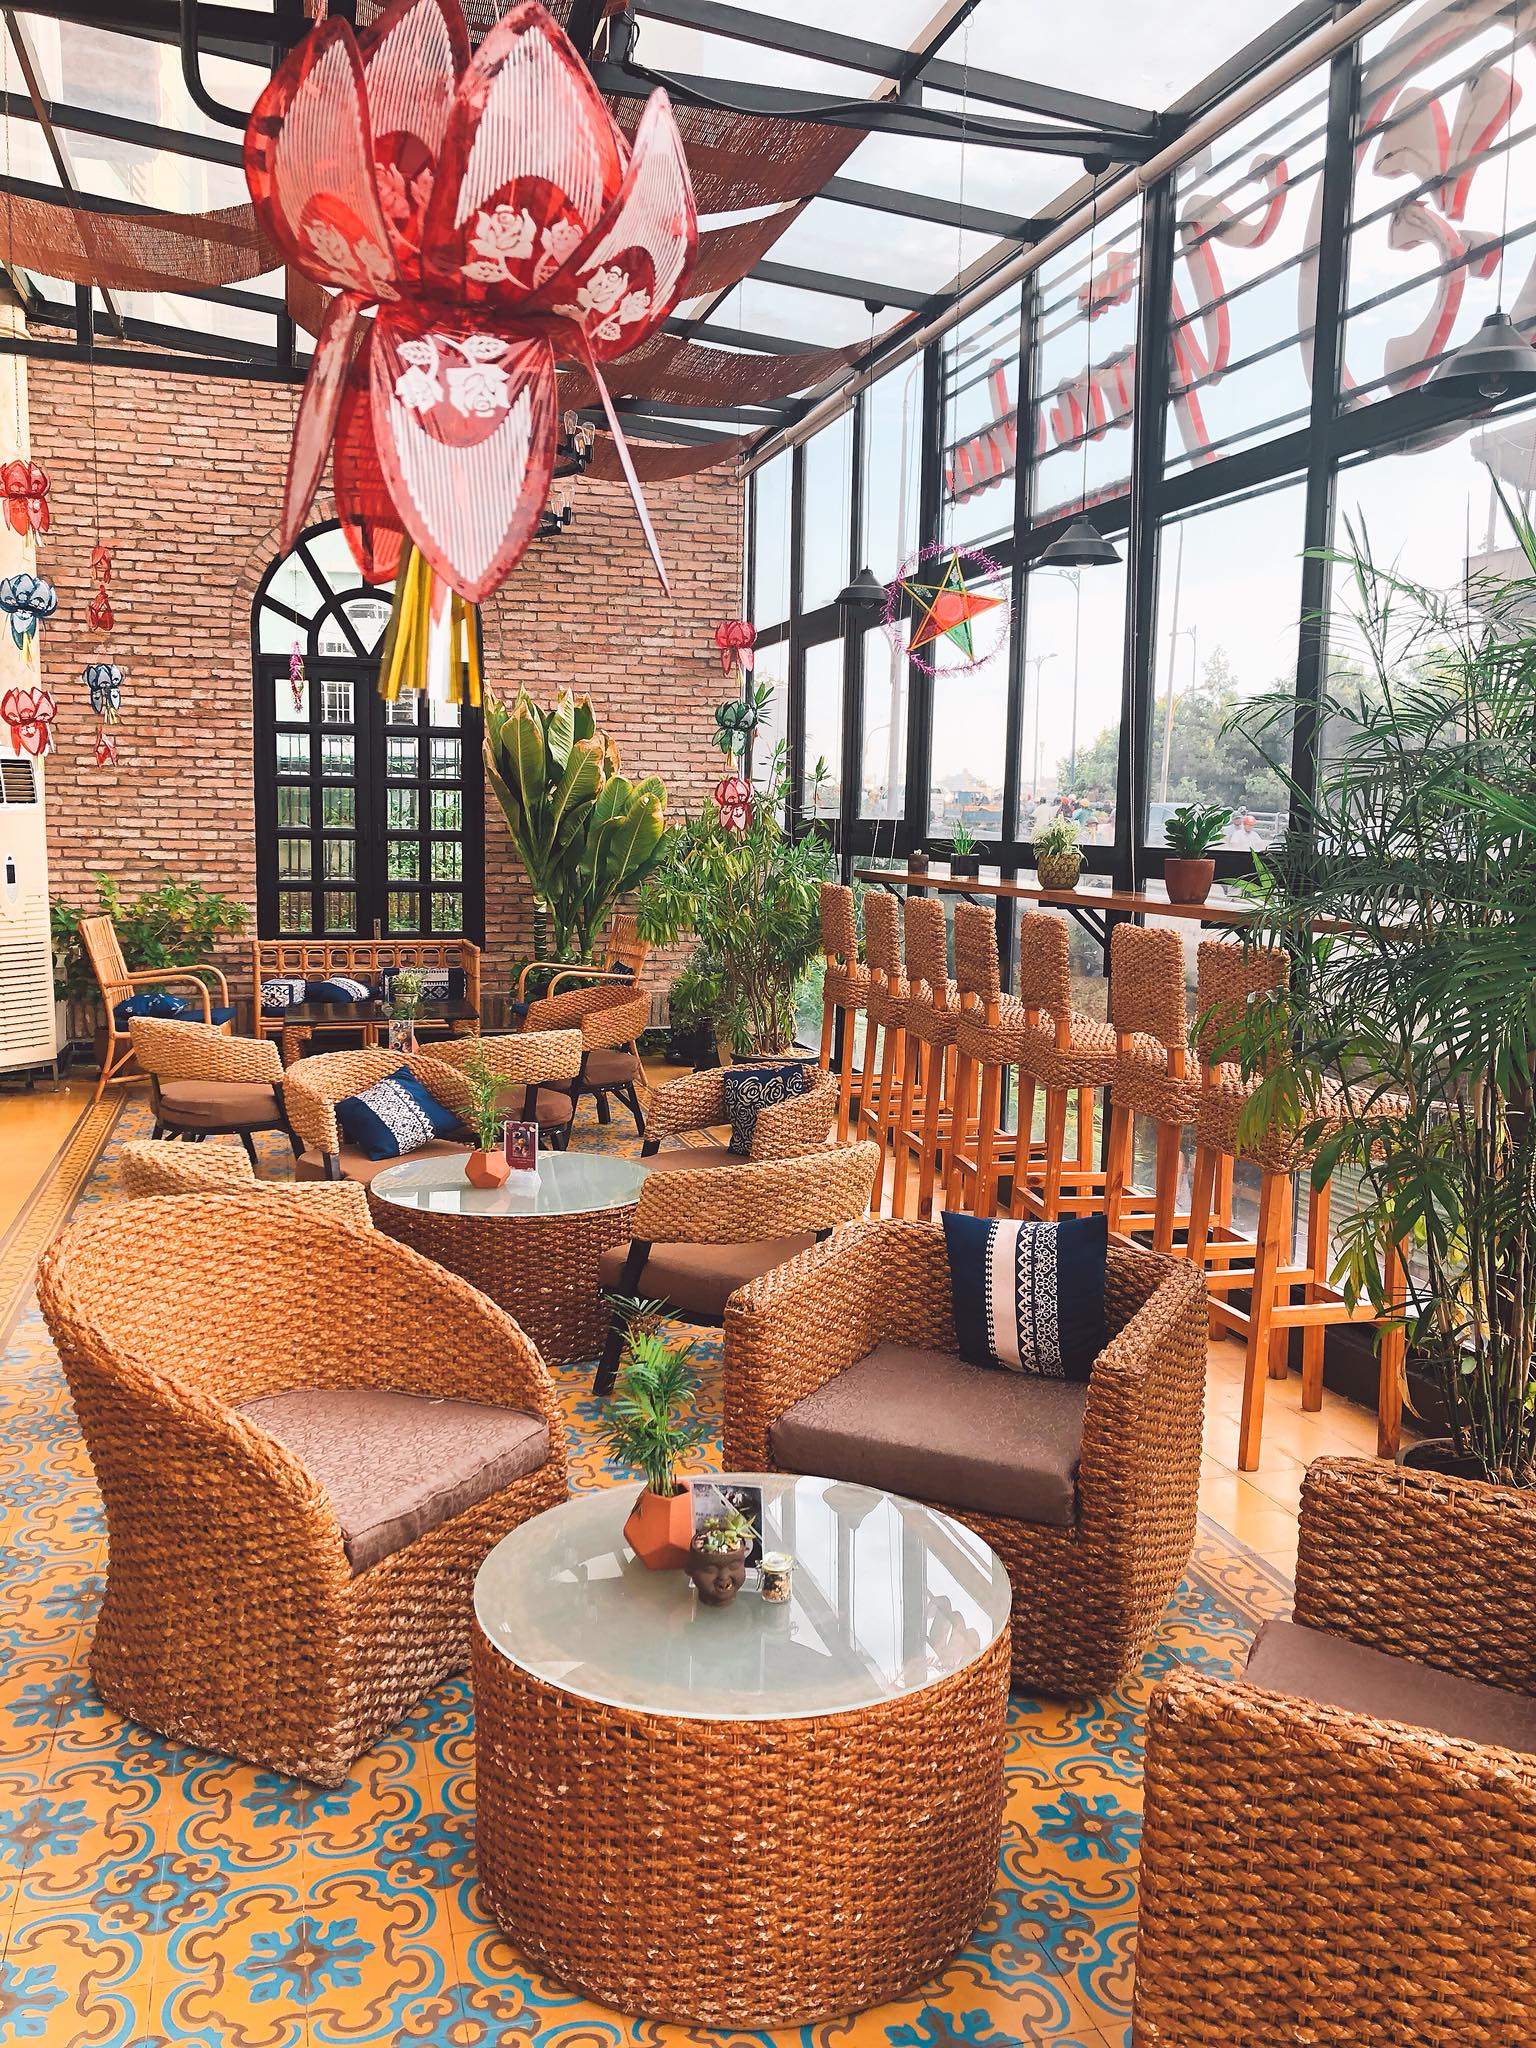 Top 20 Quán cafe quận 5 đẹp, giá bình dân có view sống ảo ở Sài Gòn – TPHCM